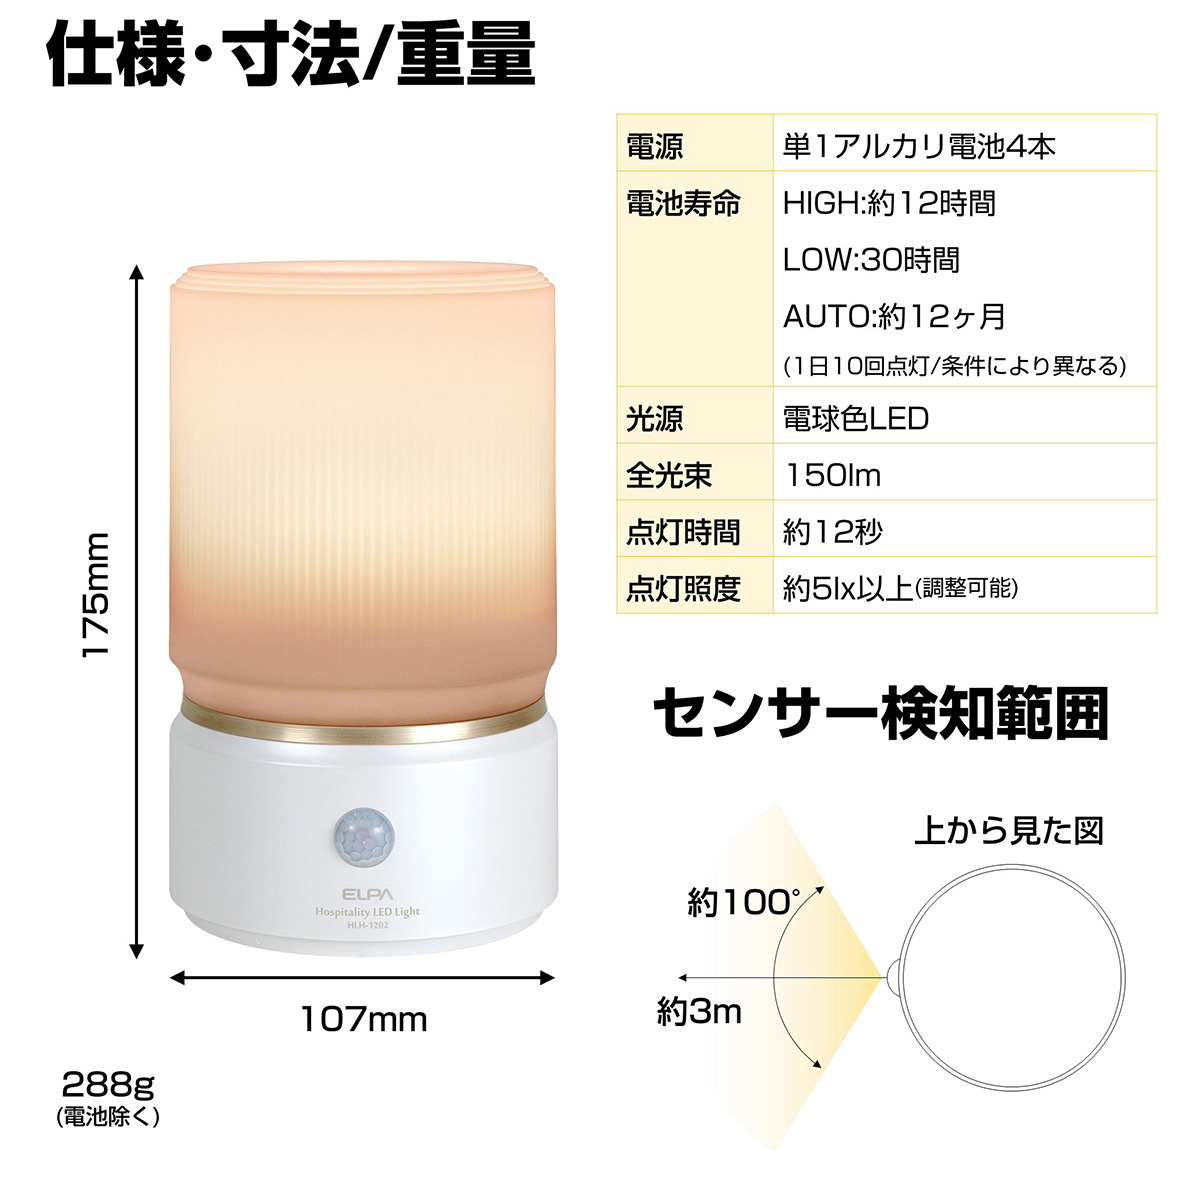 日本最大のブランド エルパ もてなしのあかり LED 明暗人感センサーライト ドア用 HLH-2206